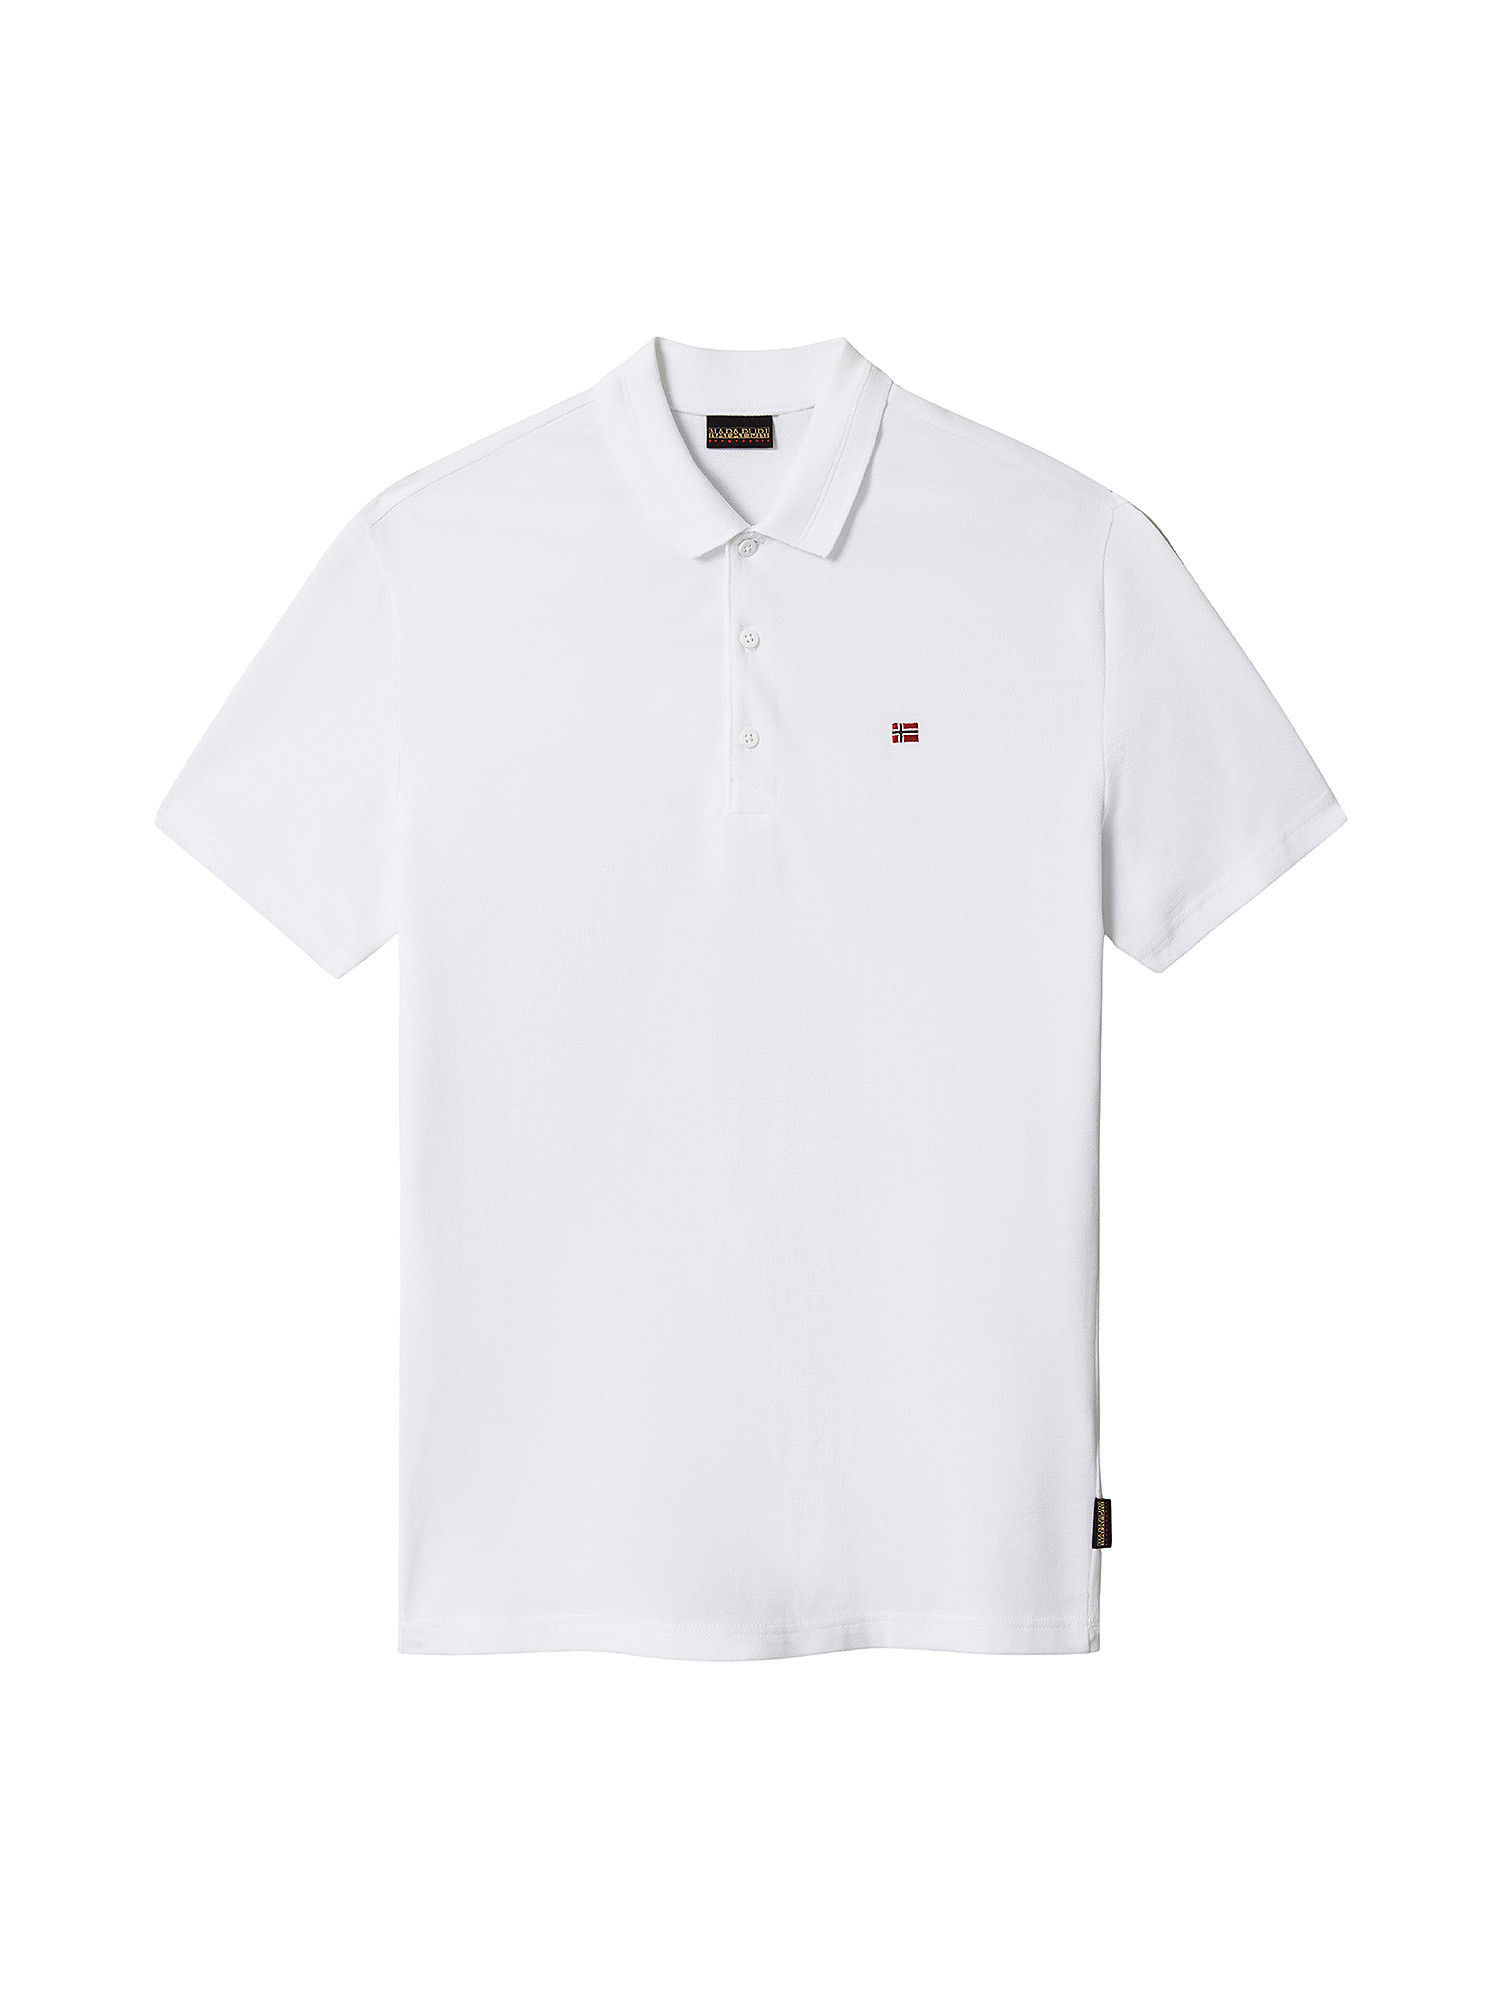 Short Sleeve Polo Ealis, White, large image number 0